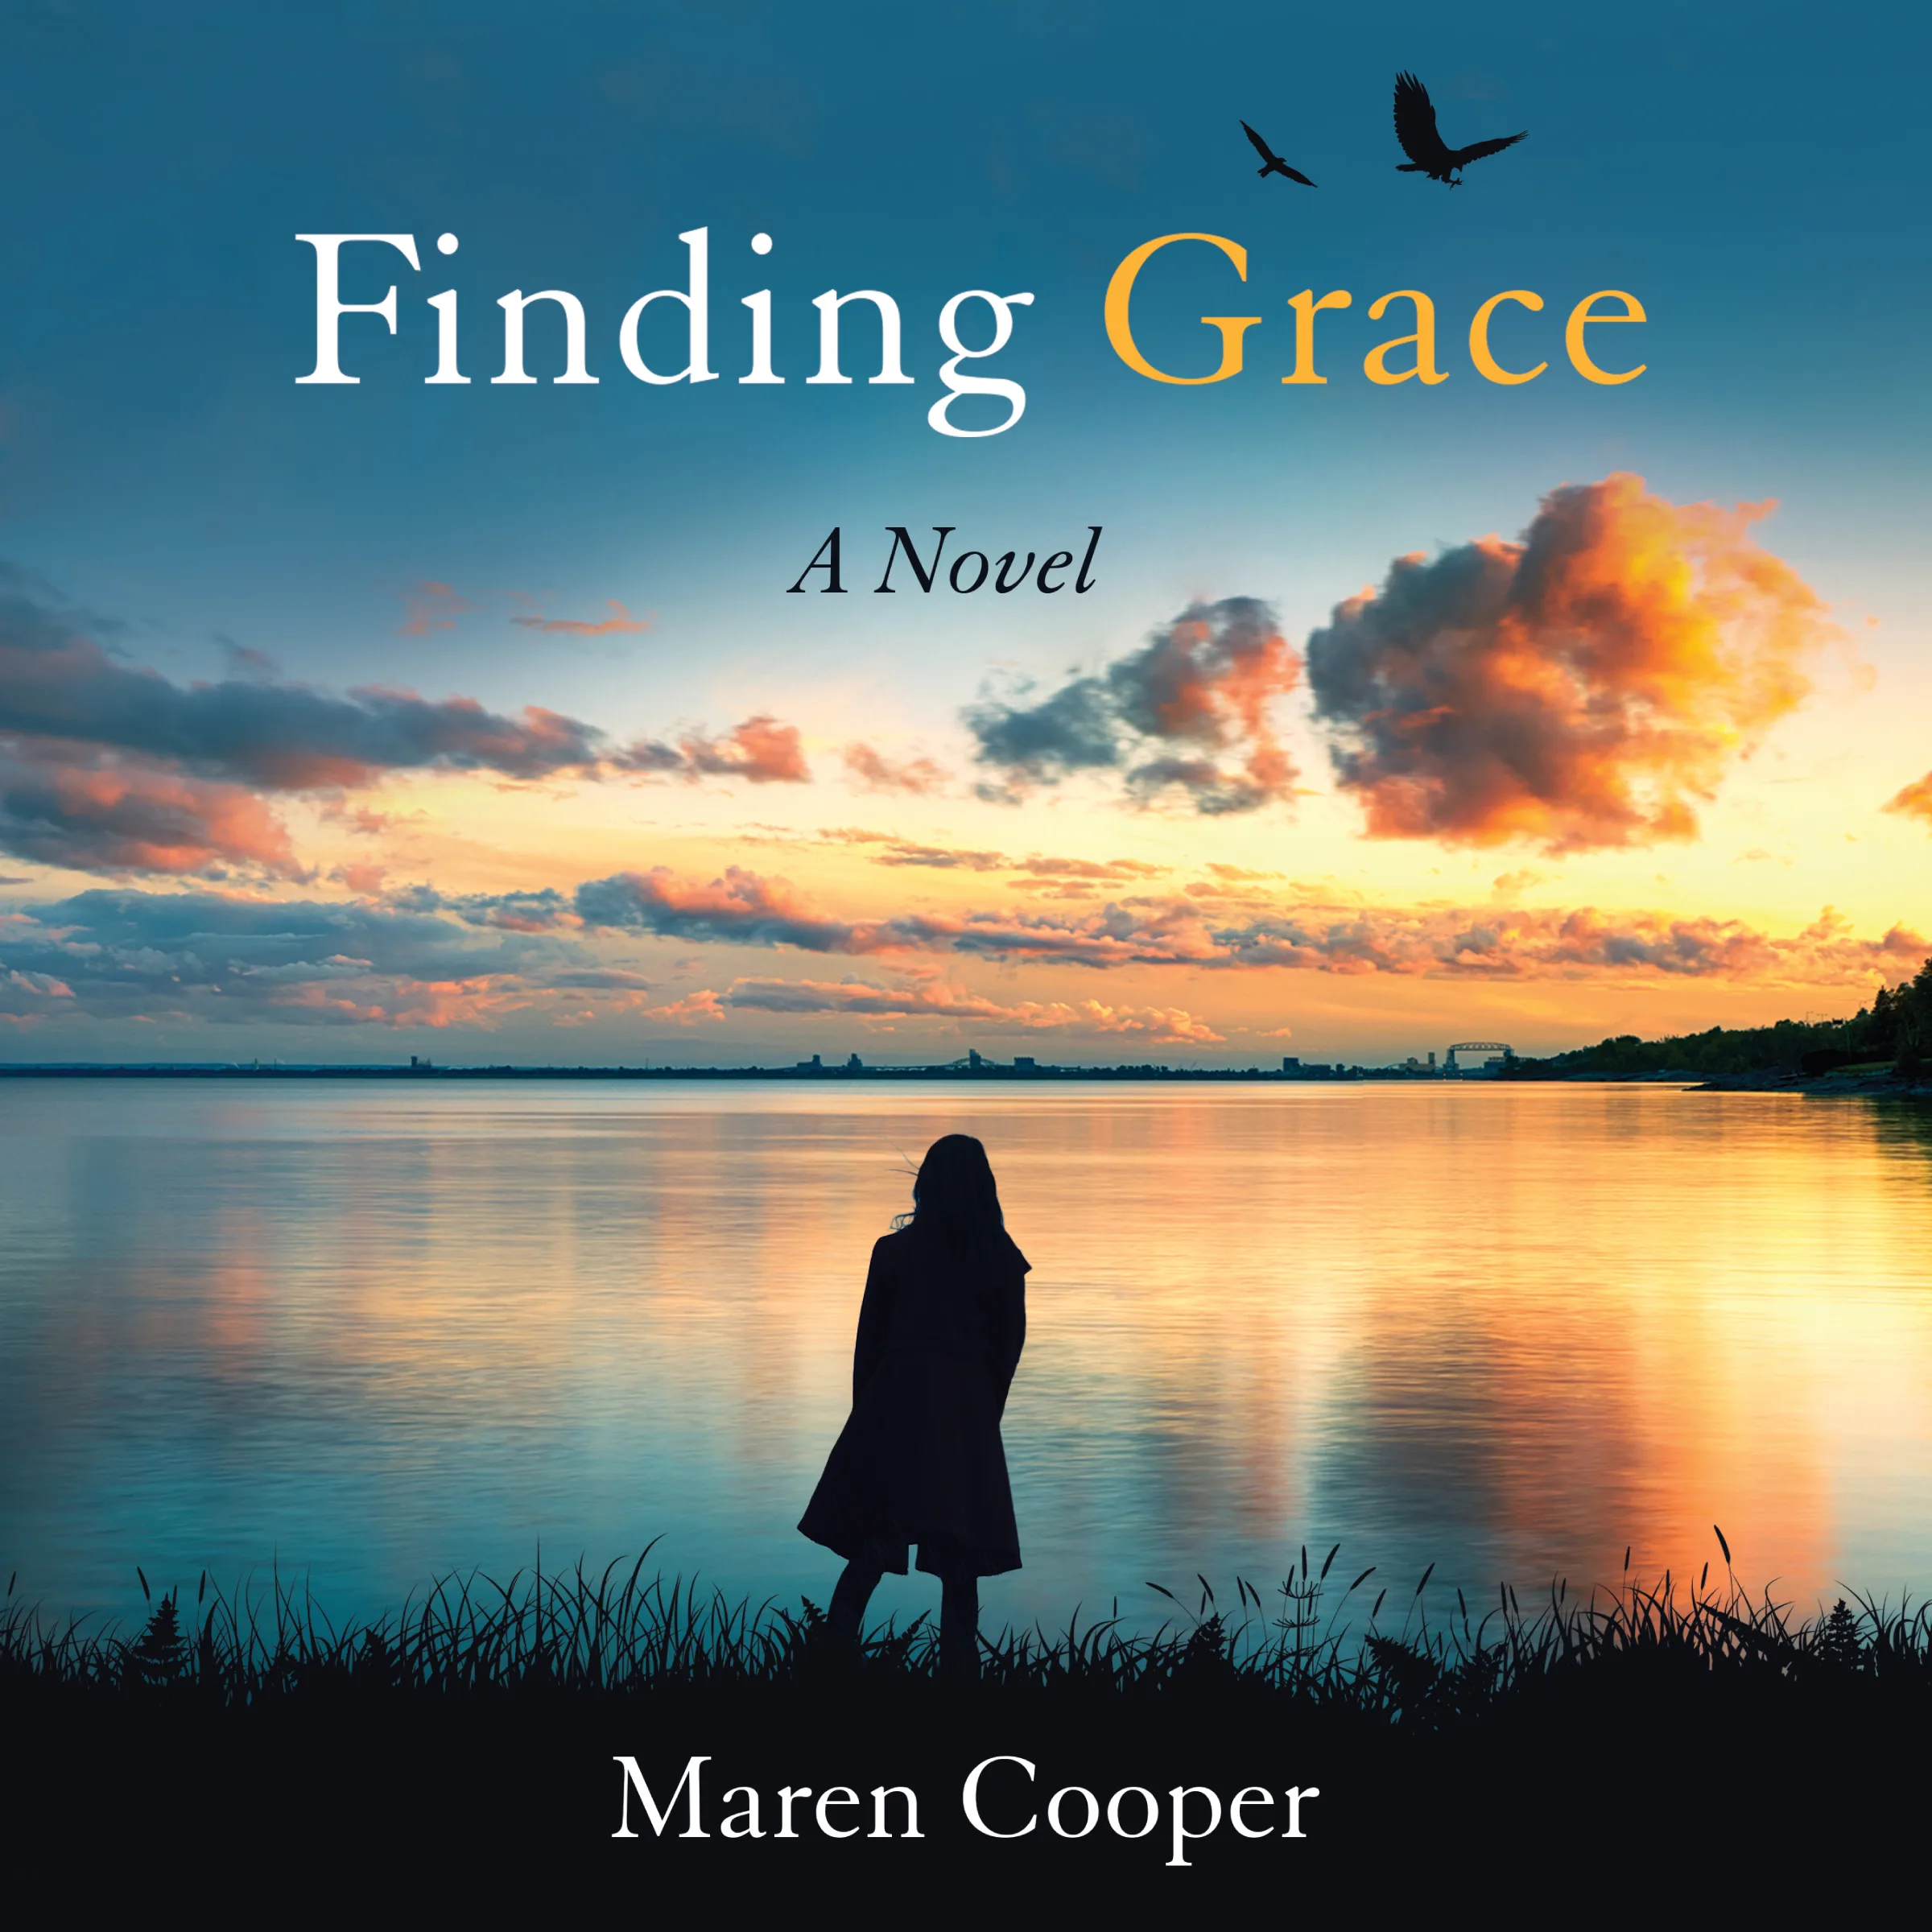 Finding Grace by Maren Cooper